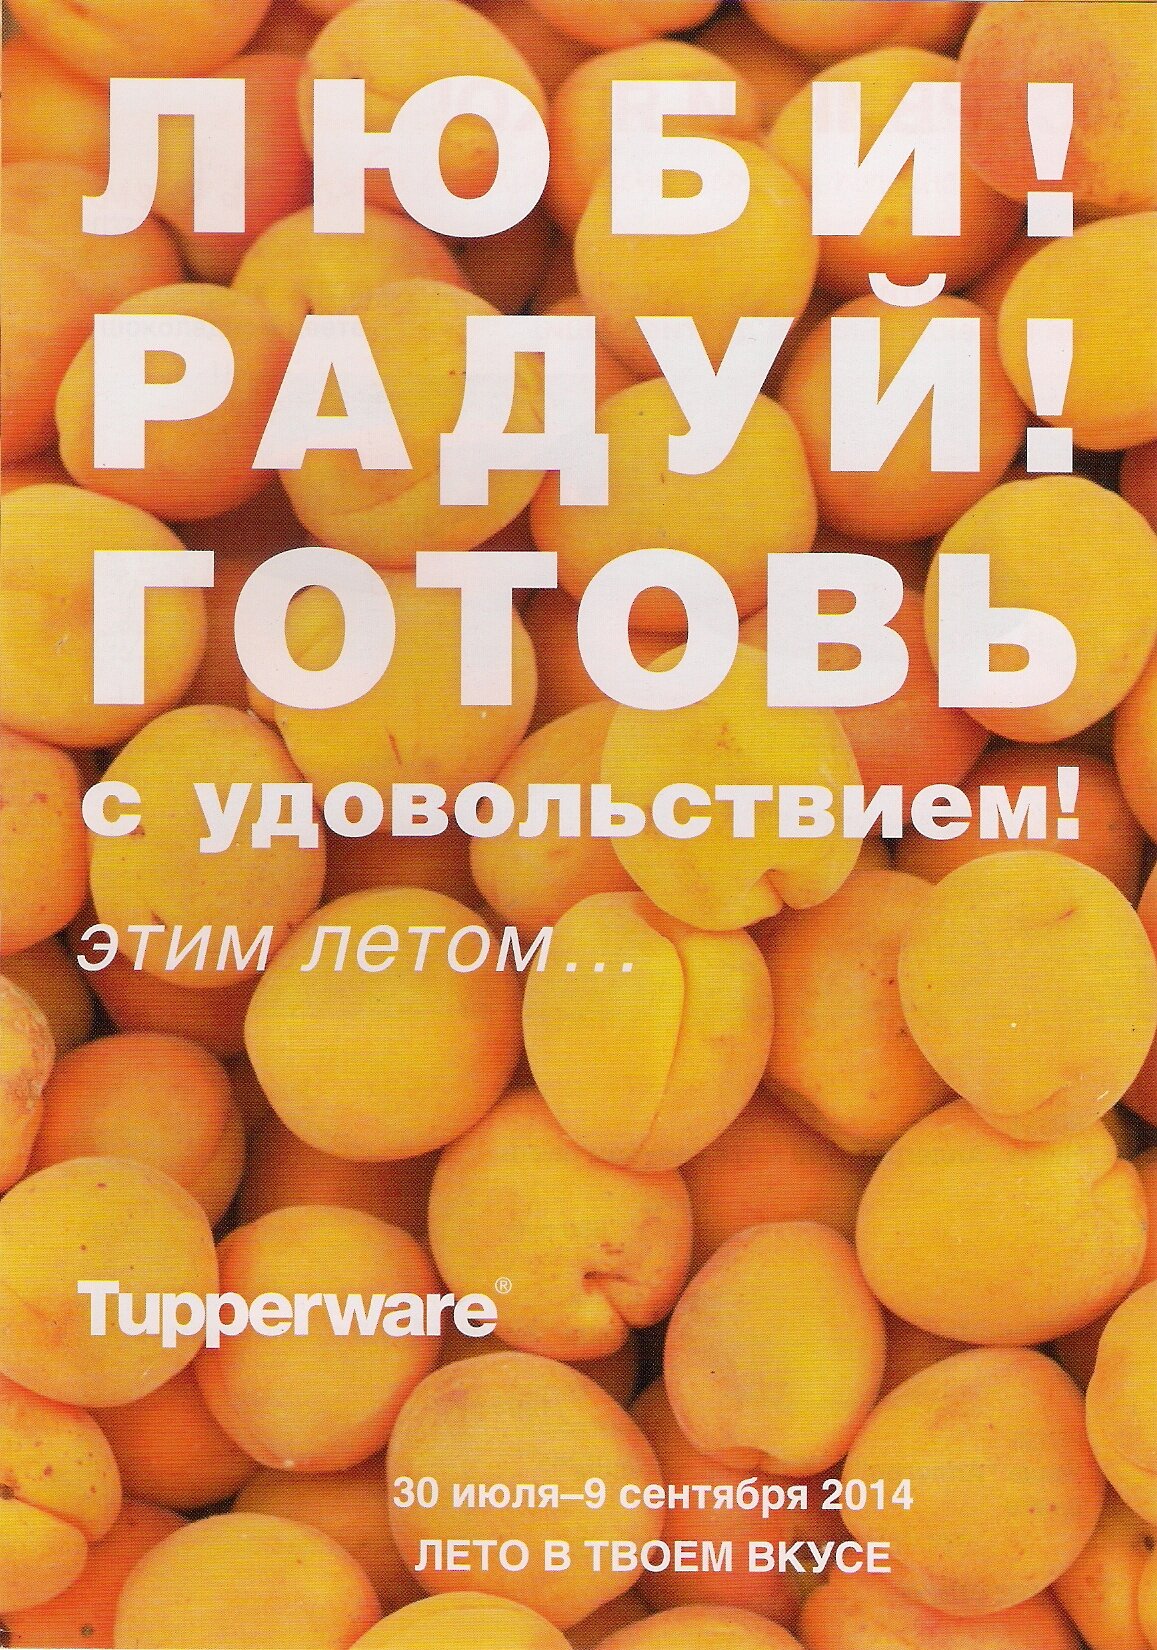 http://tupper4you.ru/images/upload/ц1.jpg